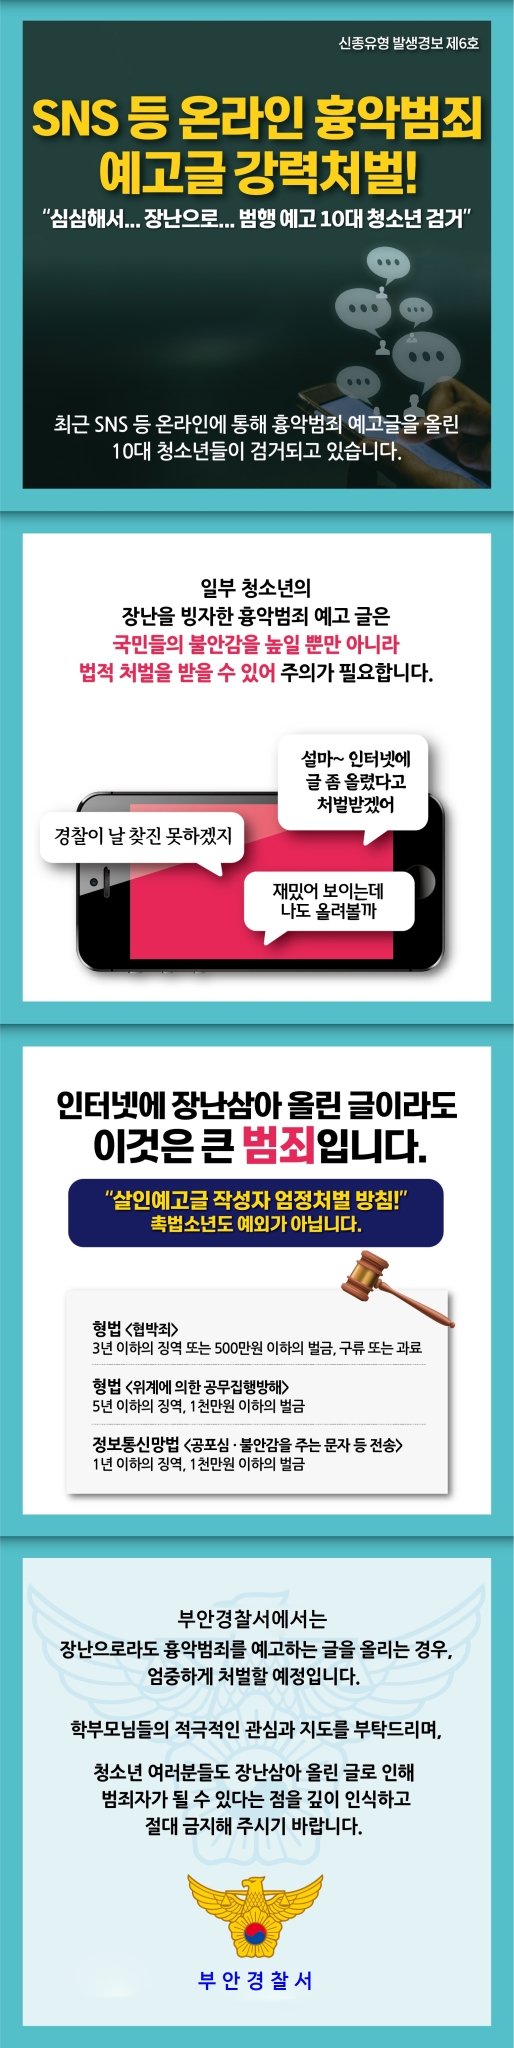 부안경찰서 생활안전과_흉악범죄 예고글 게시 예방을 위한 카드뉴스